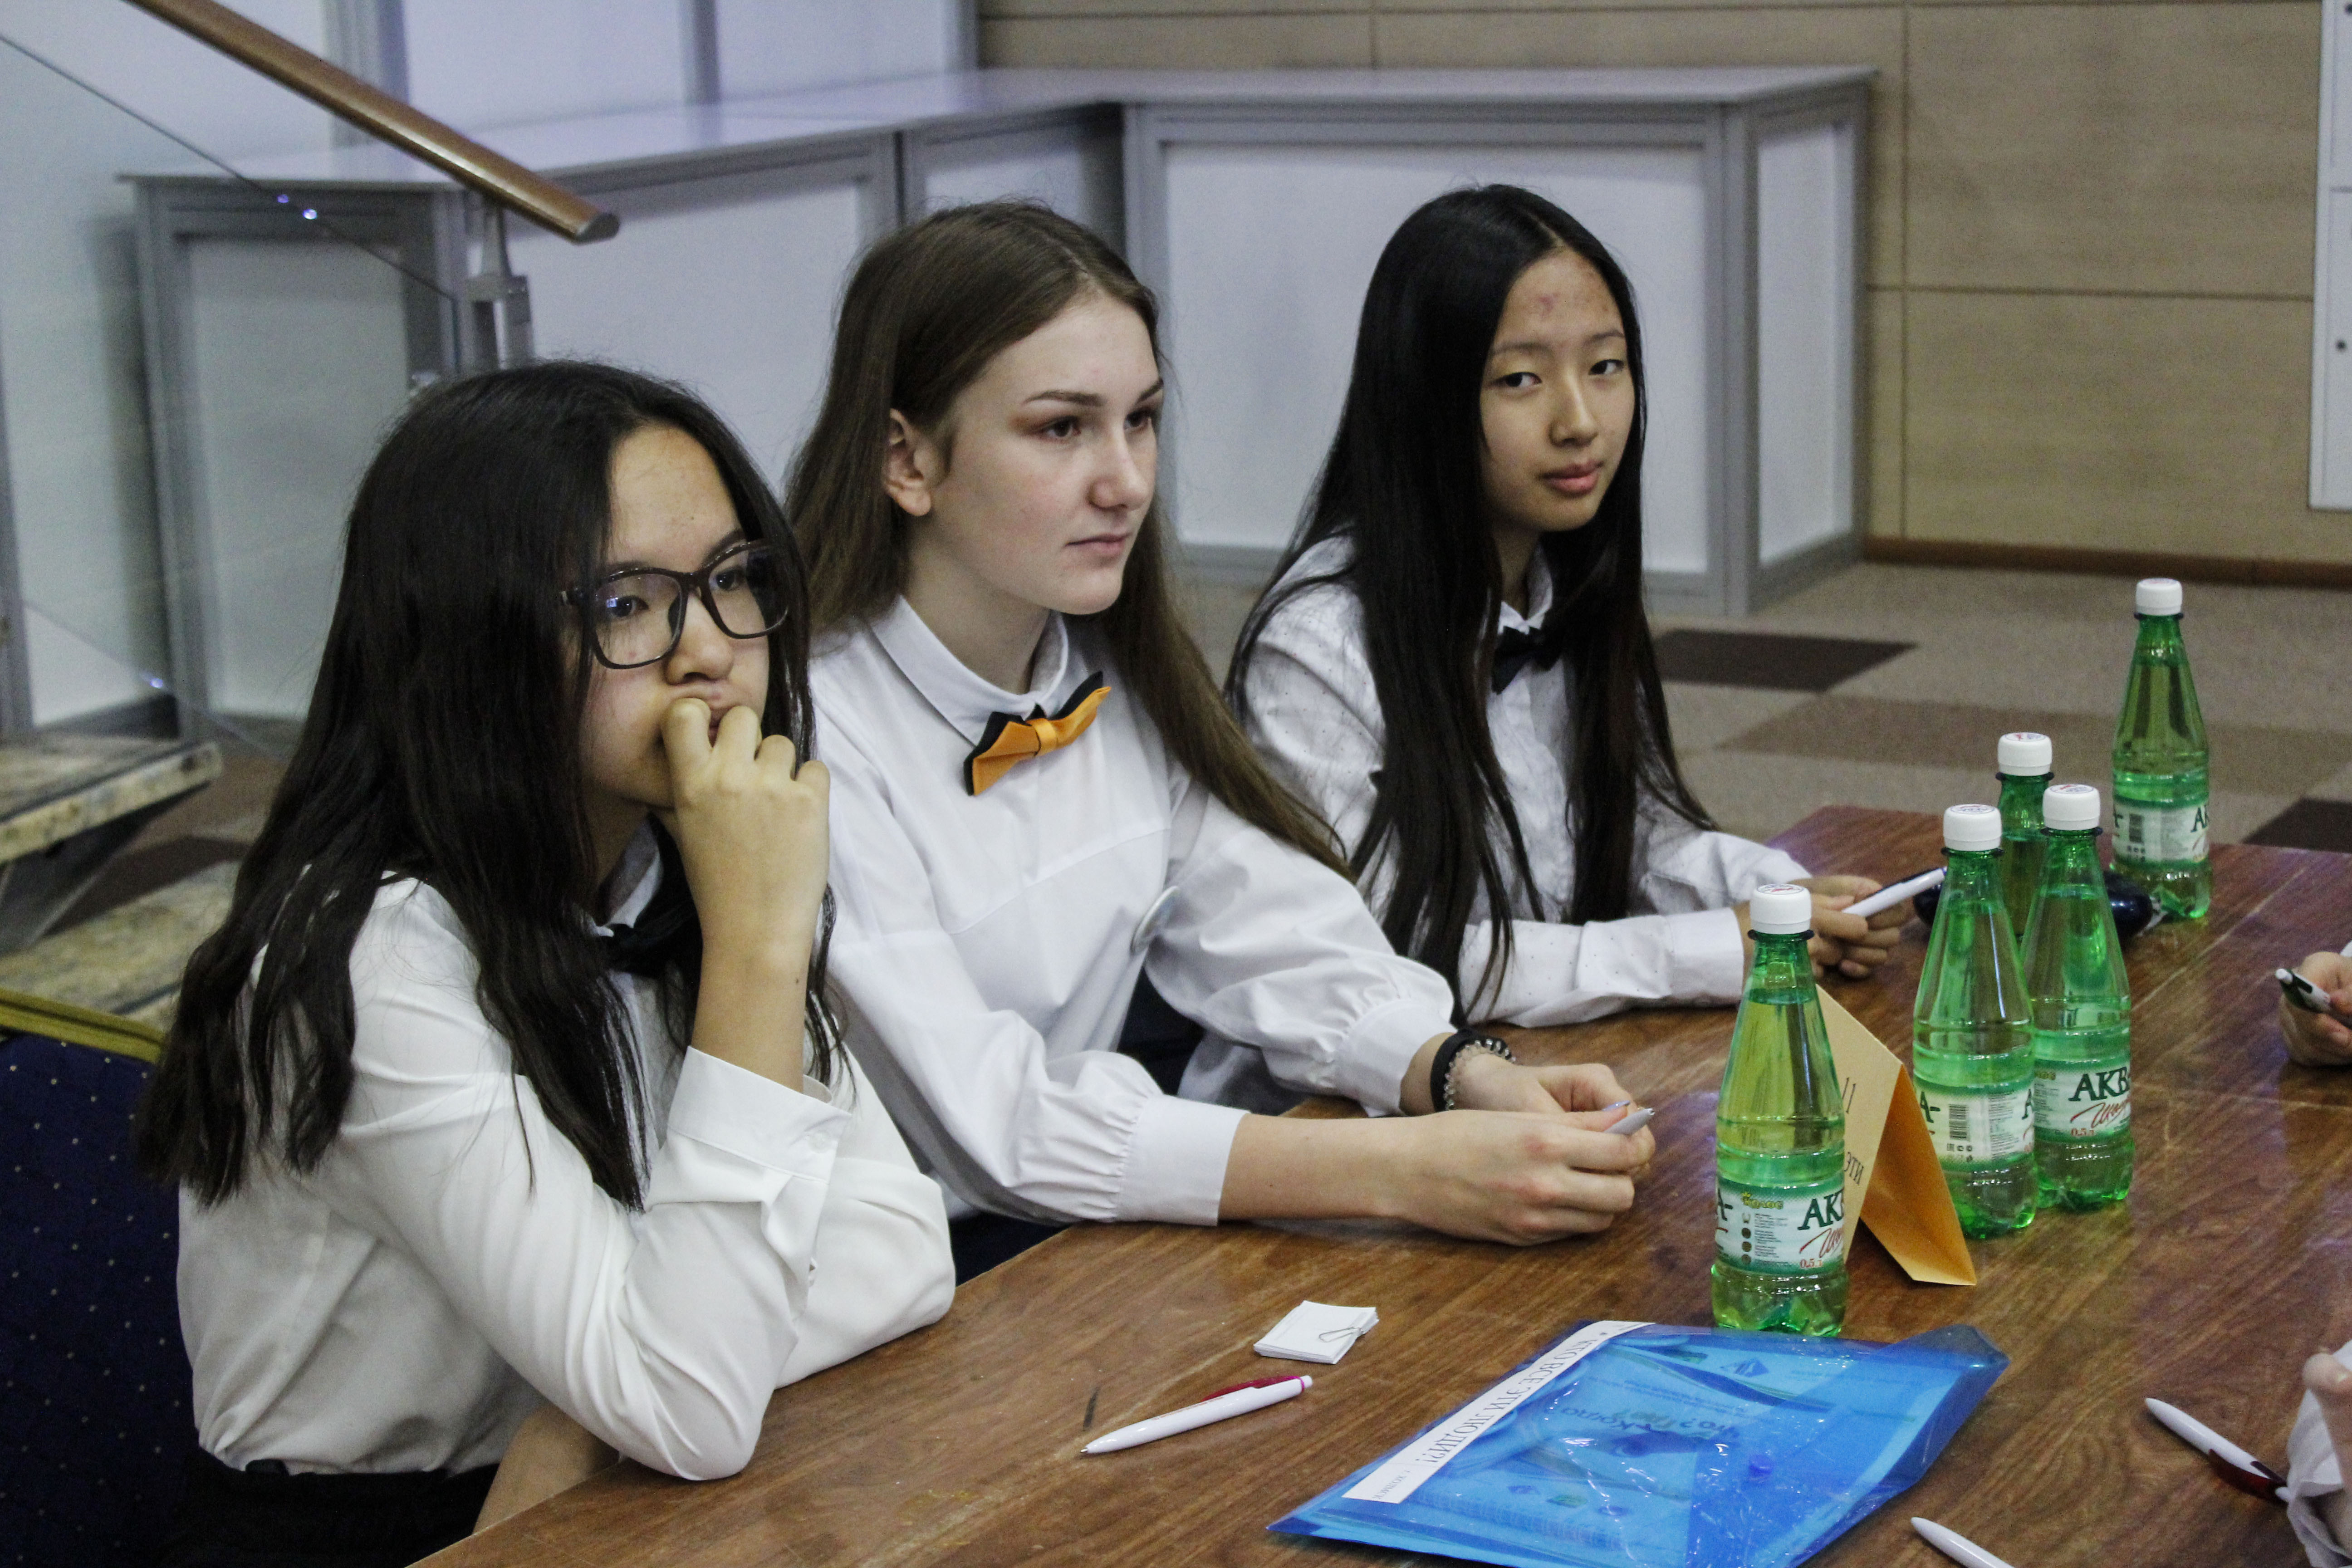 Сахалинские школьники из девяти районов области поборются за звание умнейших Юрий Доминов, ИА SakhalinMedia